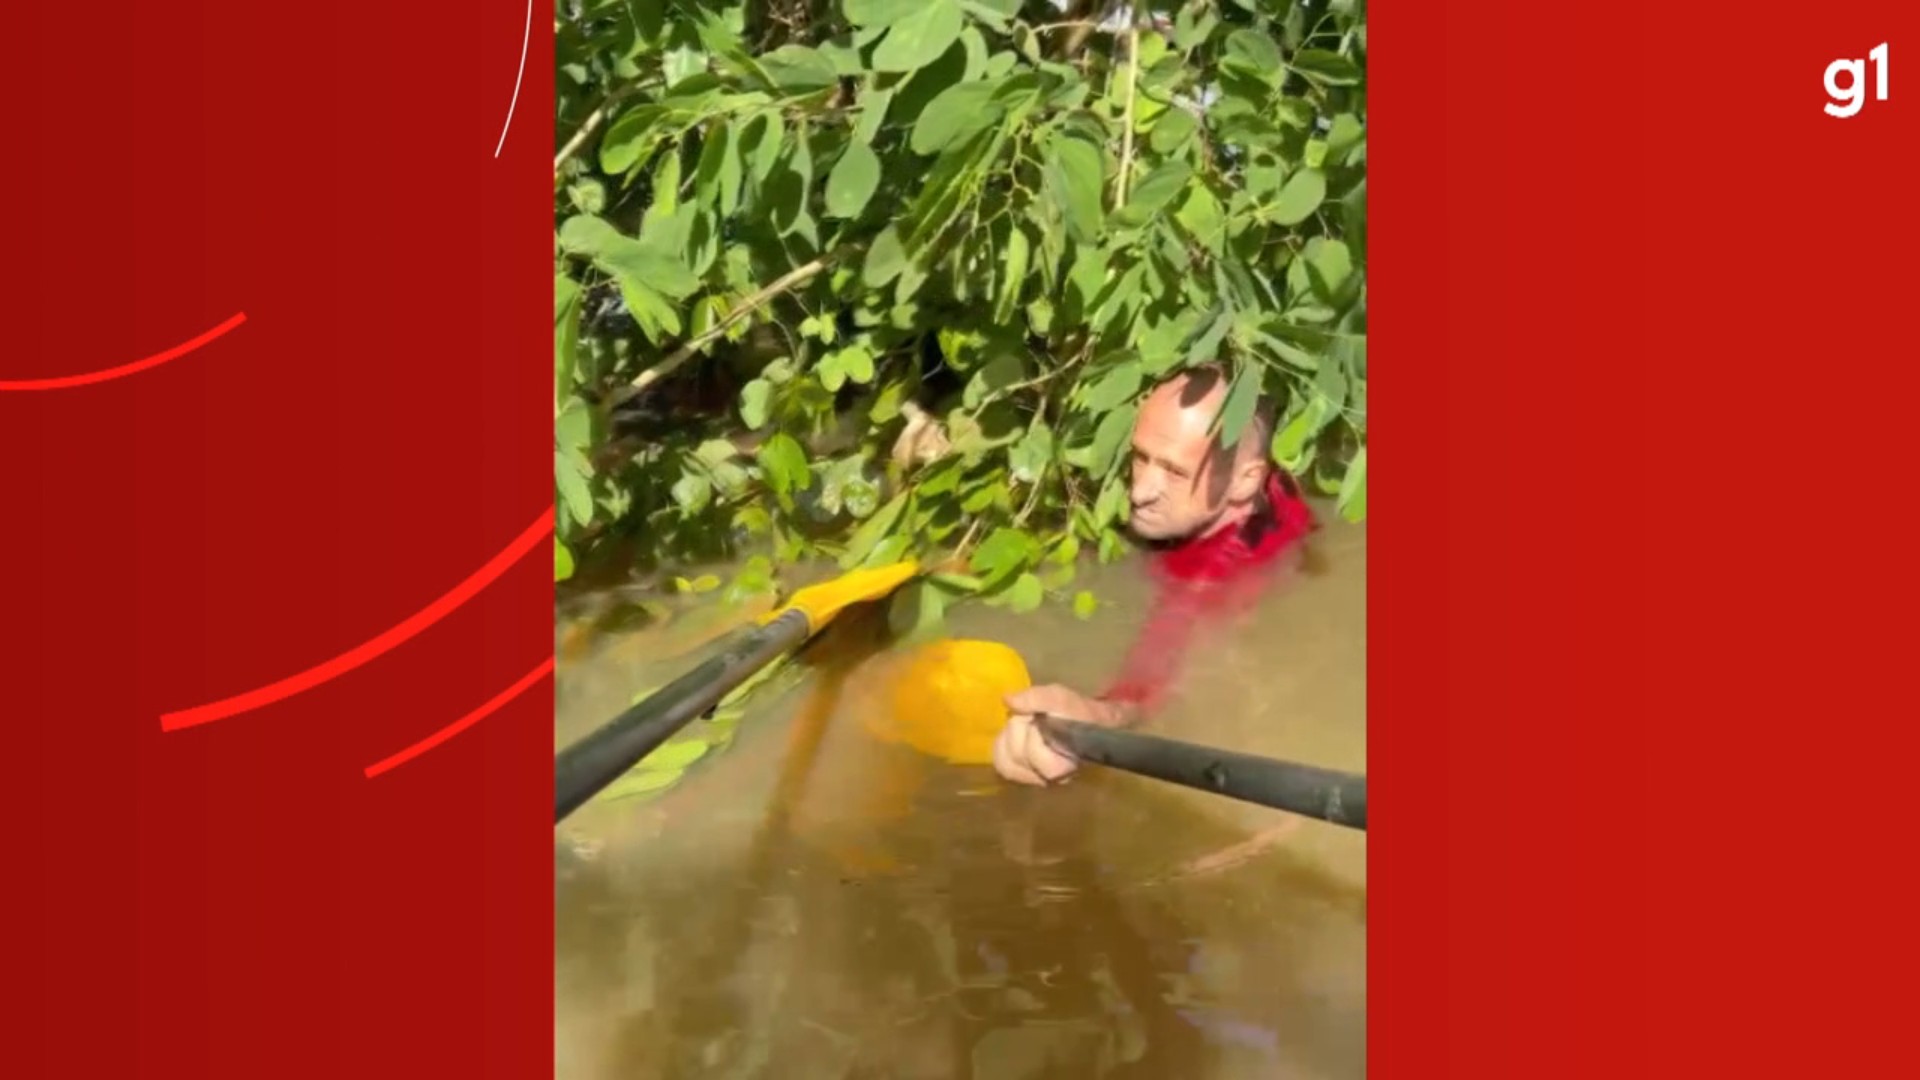 Bombeiros de Maringá resgatam idoso que estava agarrado em árvore durante enchente no Rio Grande do Sul: VÍDEO